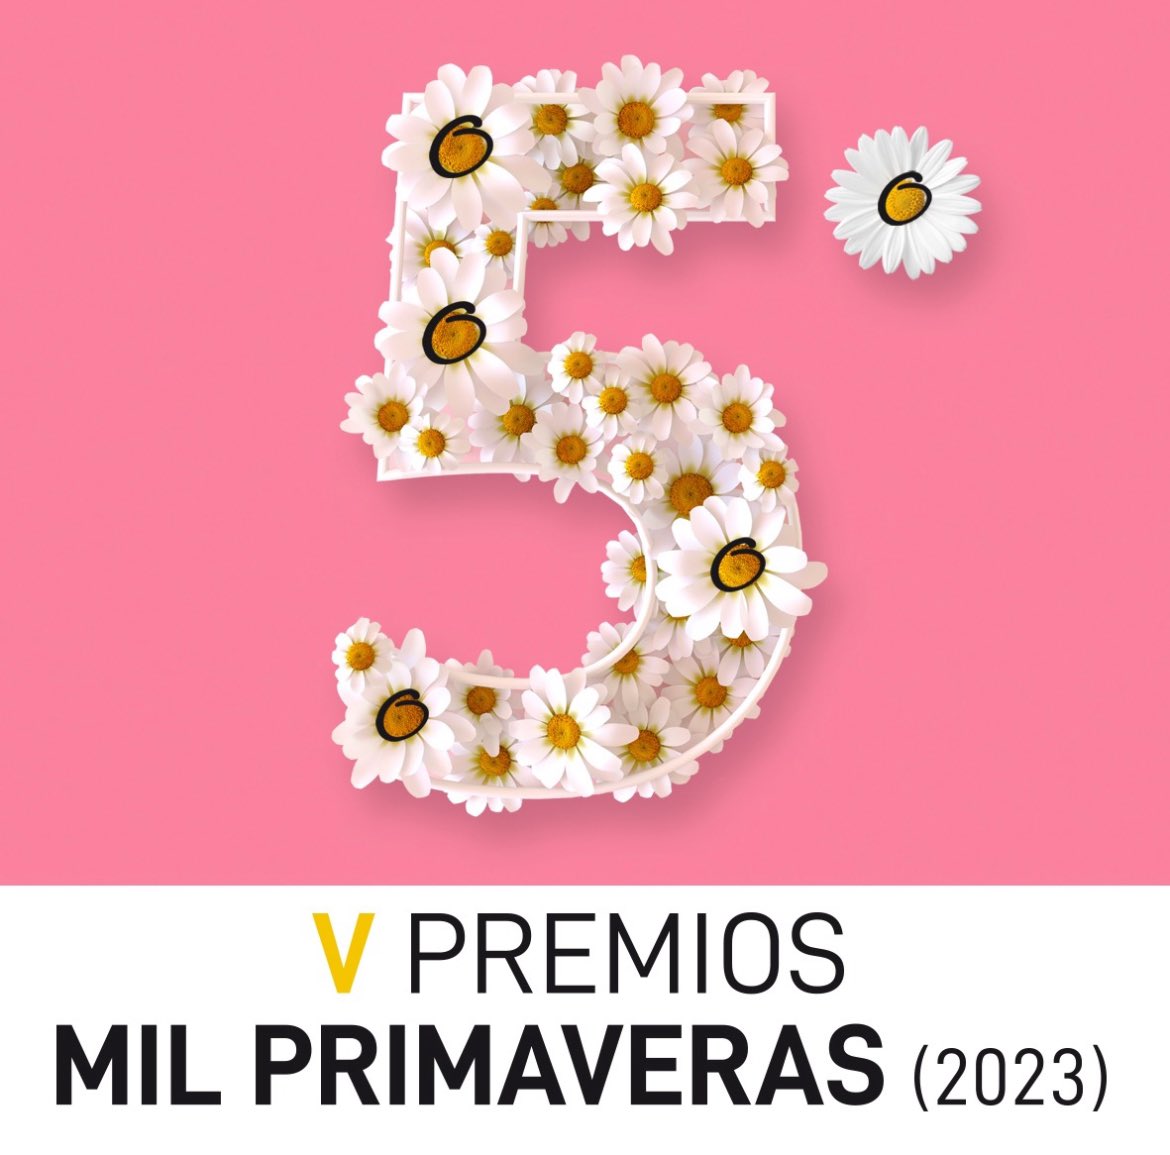 #AquíTaménSeFala Premio Mil Primaveras 2023! ❤️🥳 milprimaveras.gal/nova/gl/65